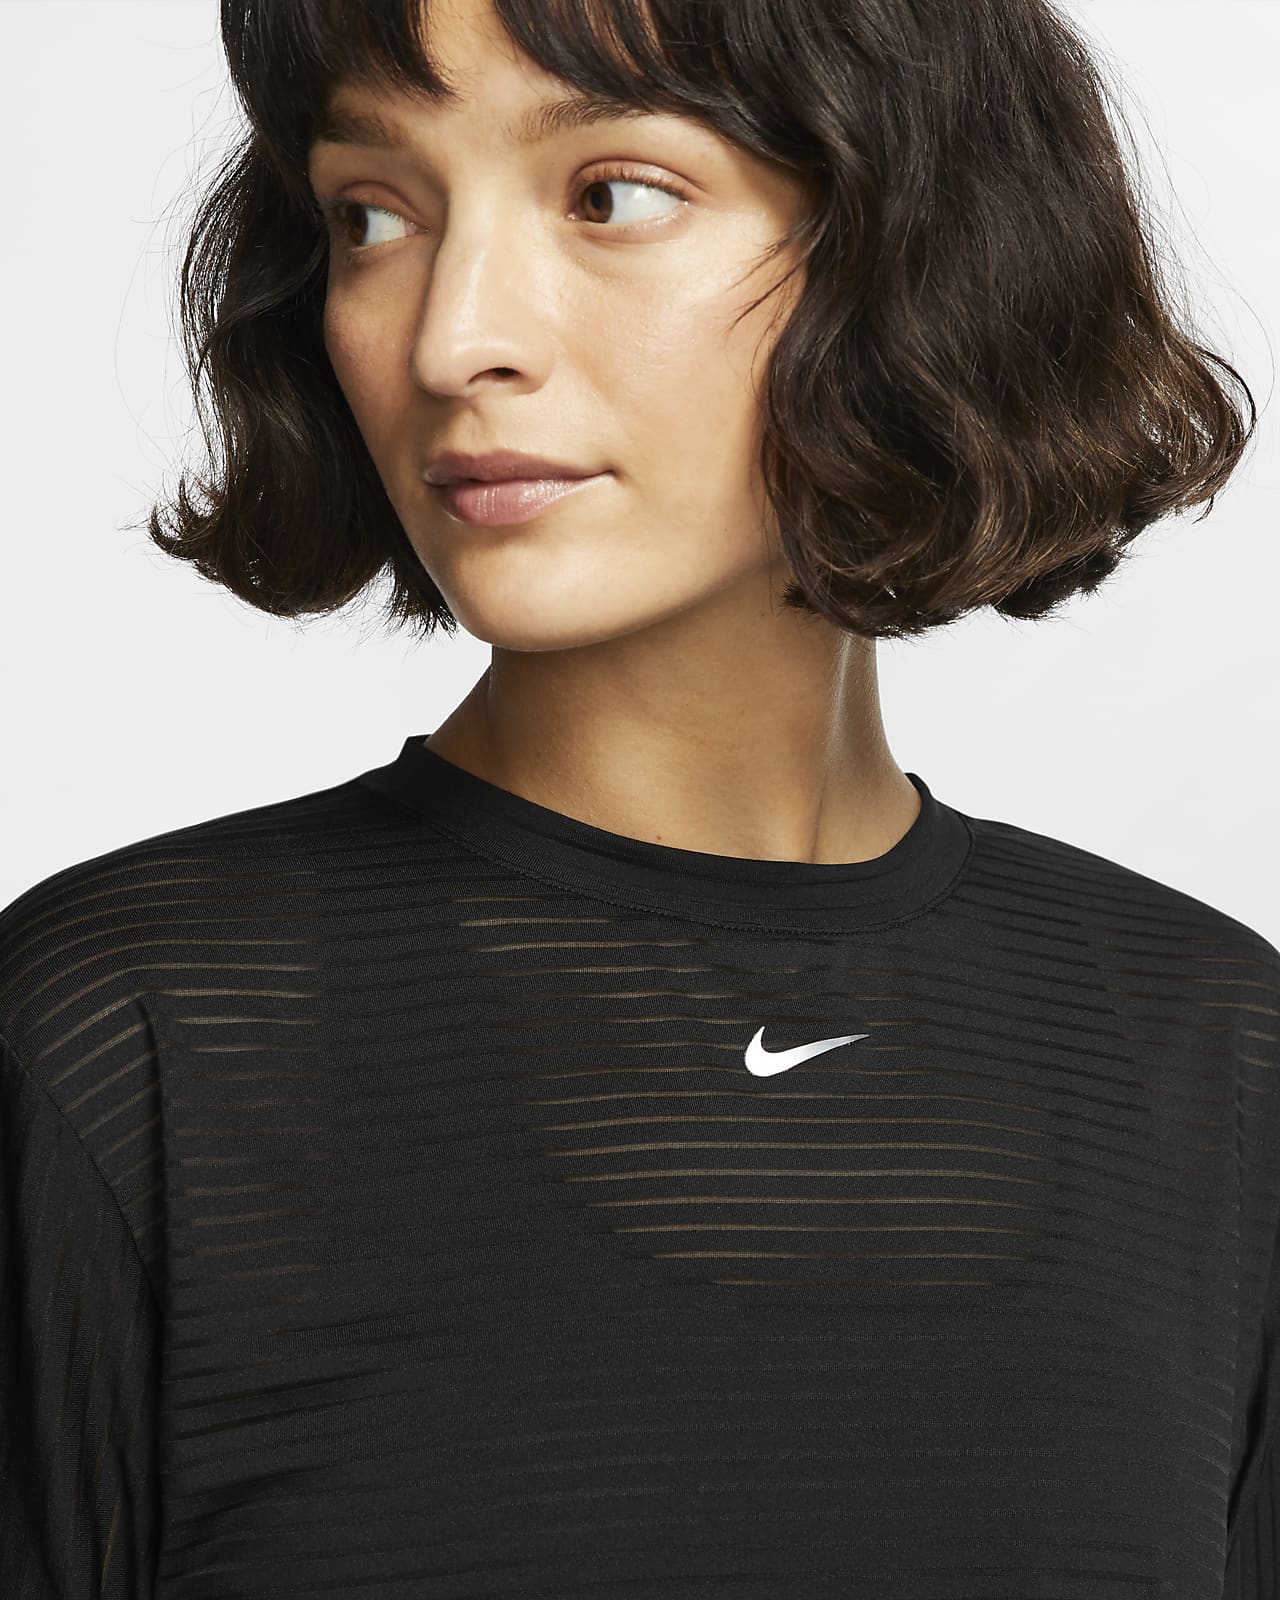 Long-Sleeve Mesh Crop Top. Nike CA